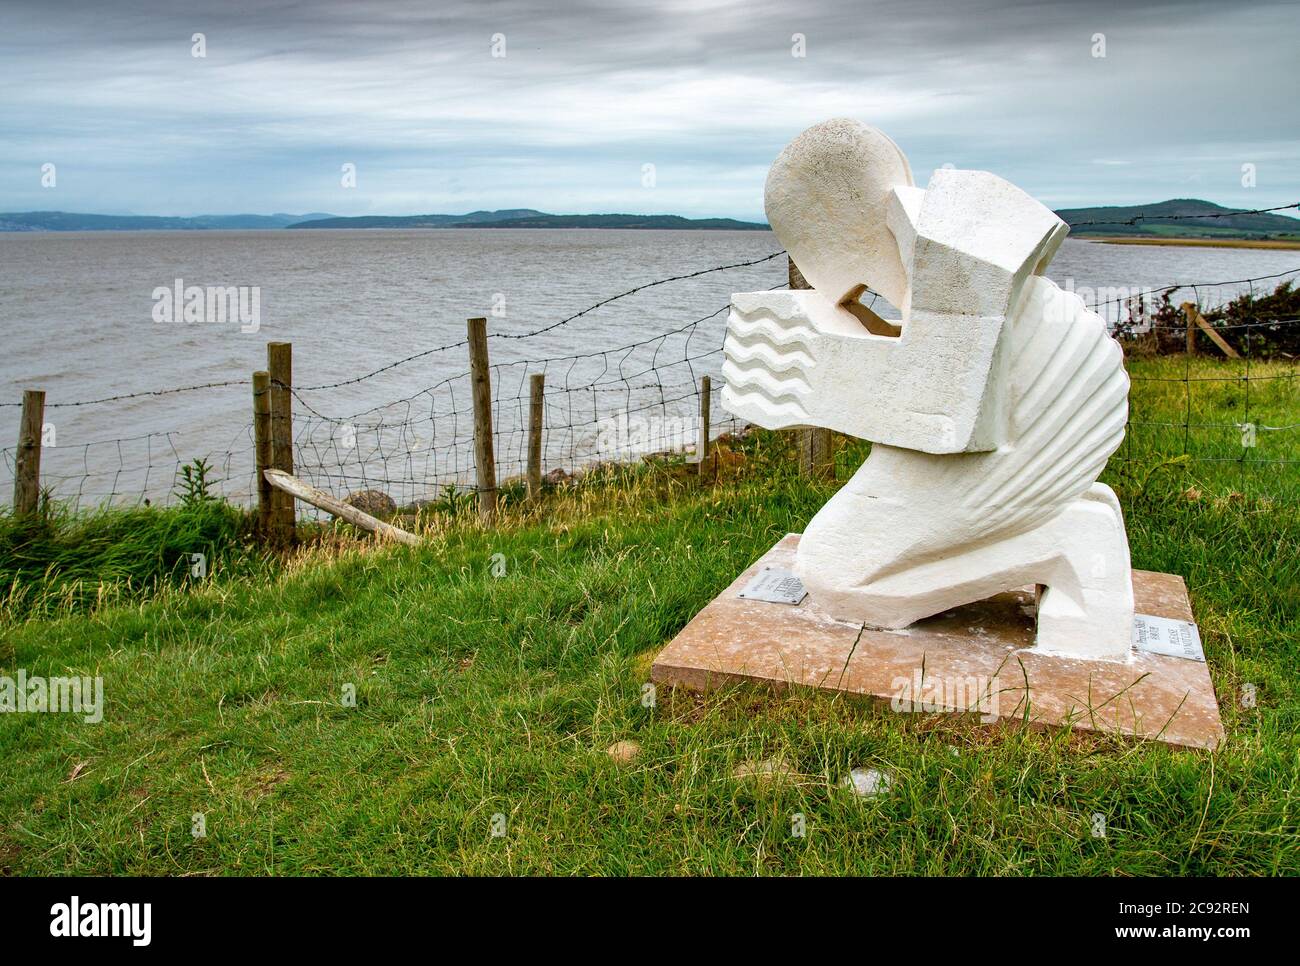 Praying Shell Sculpture, une sculpture publique surplombant la baie de Morecambe, à Red Bank Farm, Bolton-le-Sands, Carnforth, Lancashire, Royaume-Uni. Banque D'Images